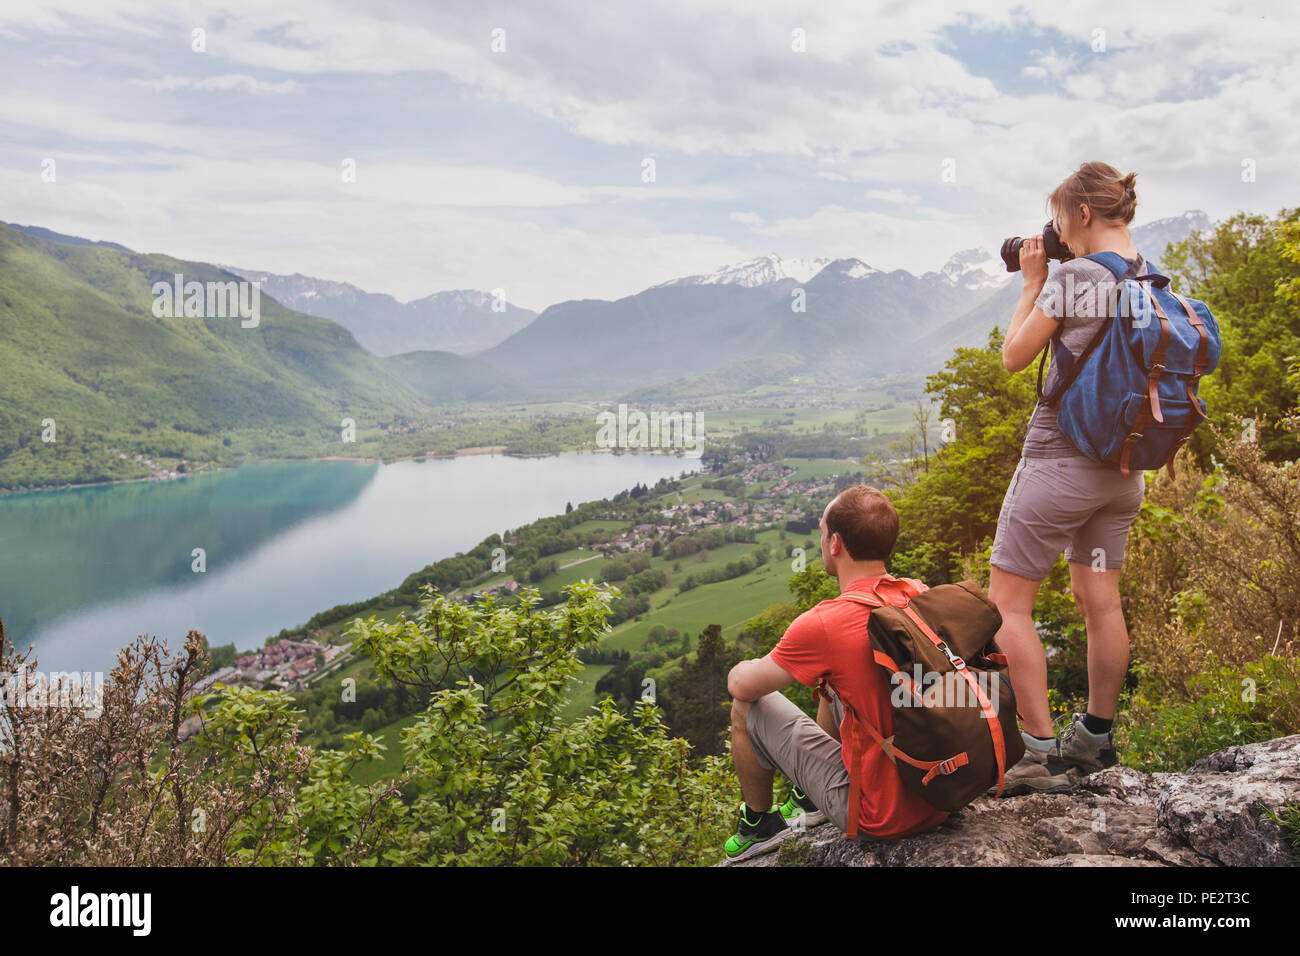 Voyages et tourisme, couple de voyageurs avec des sacs à dos, avec vue panoramique sur le lac, les randonneurs se détendre sur sommet de la montagne Banque D'Images